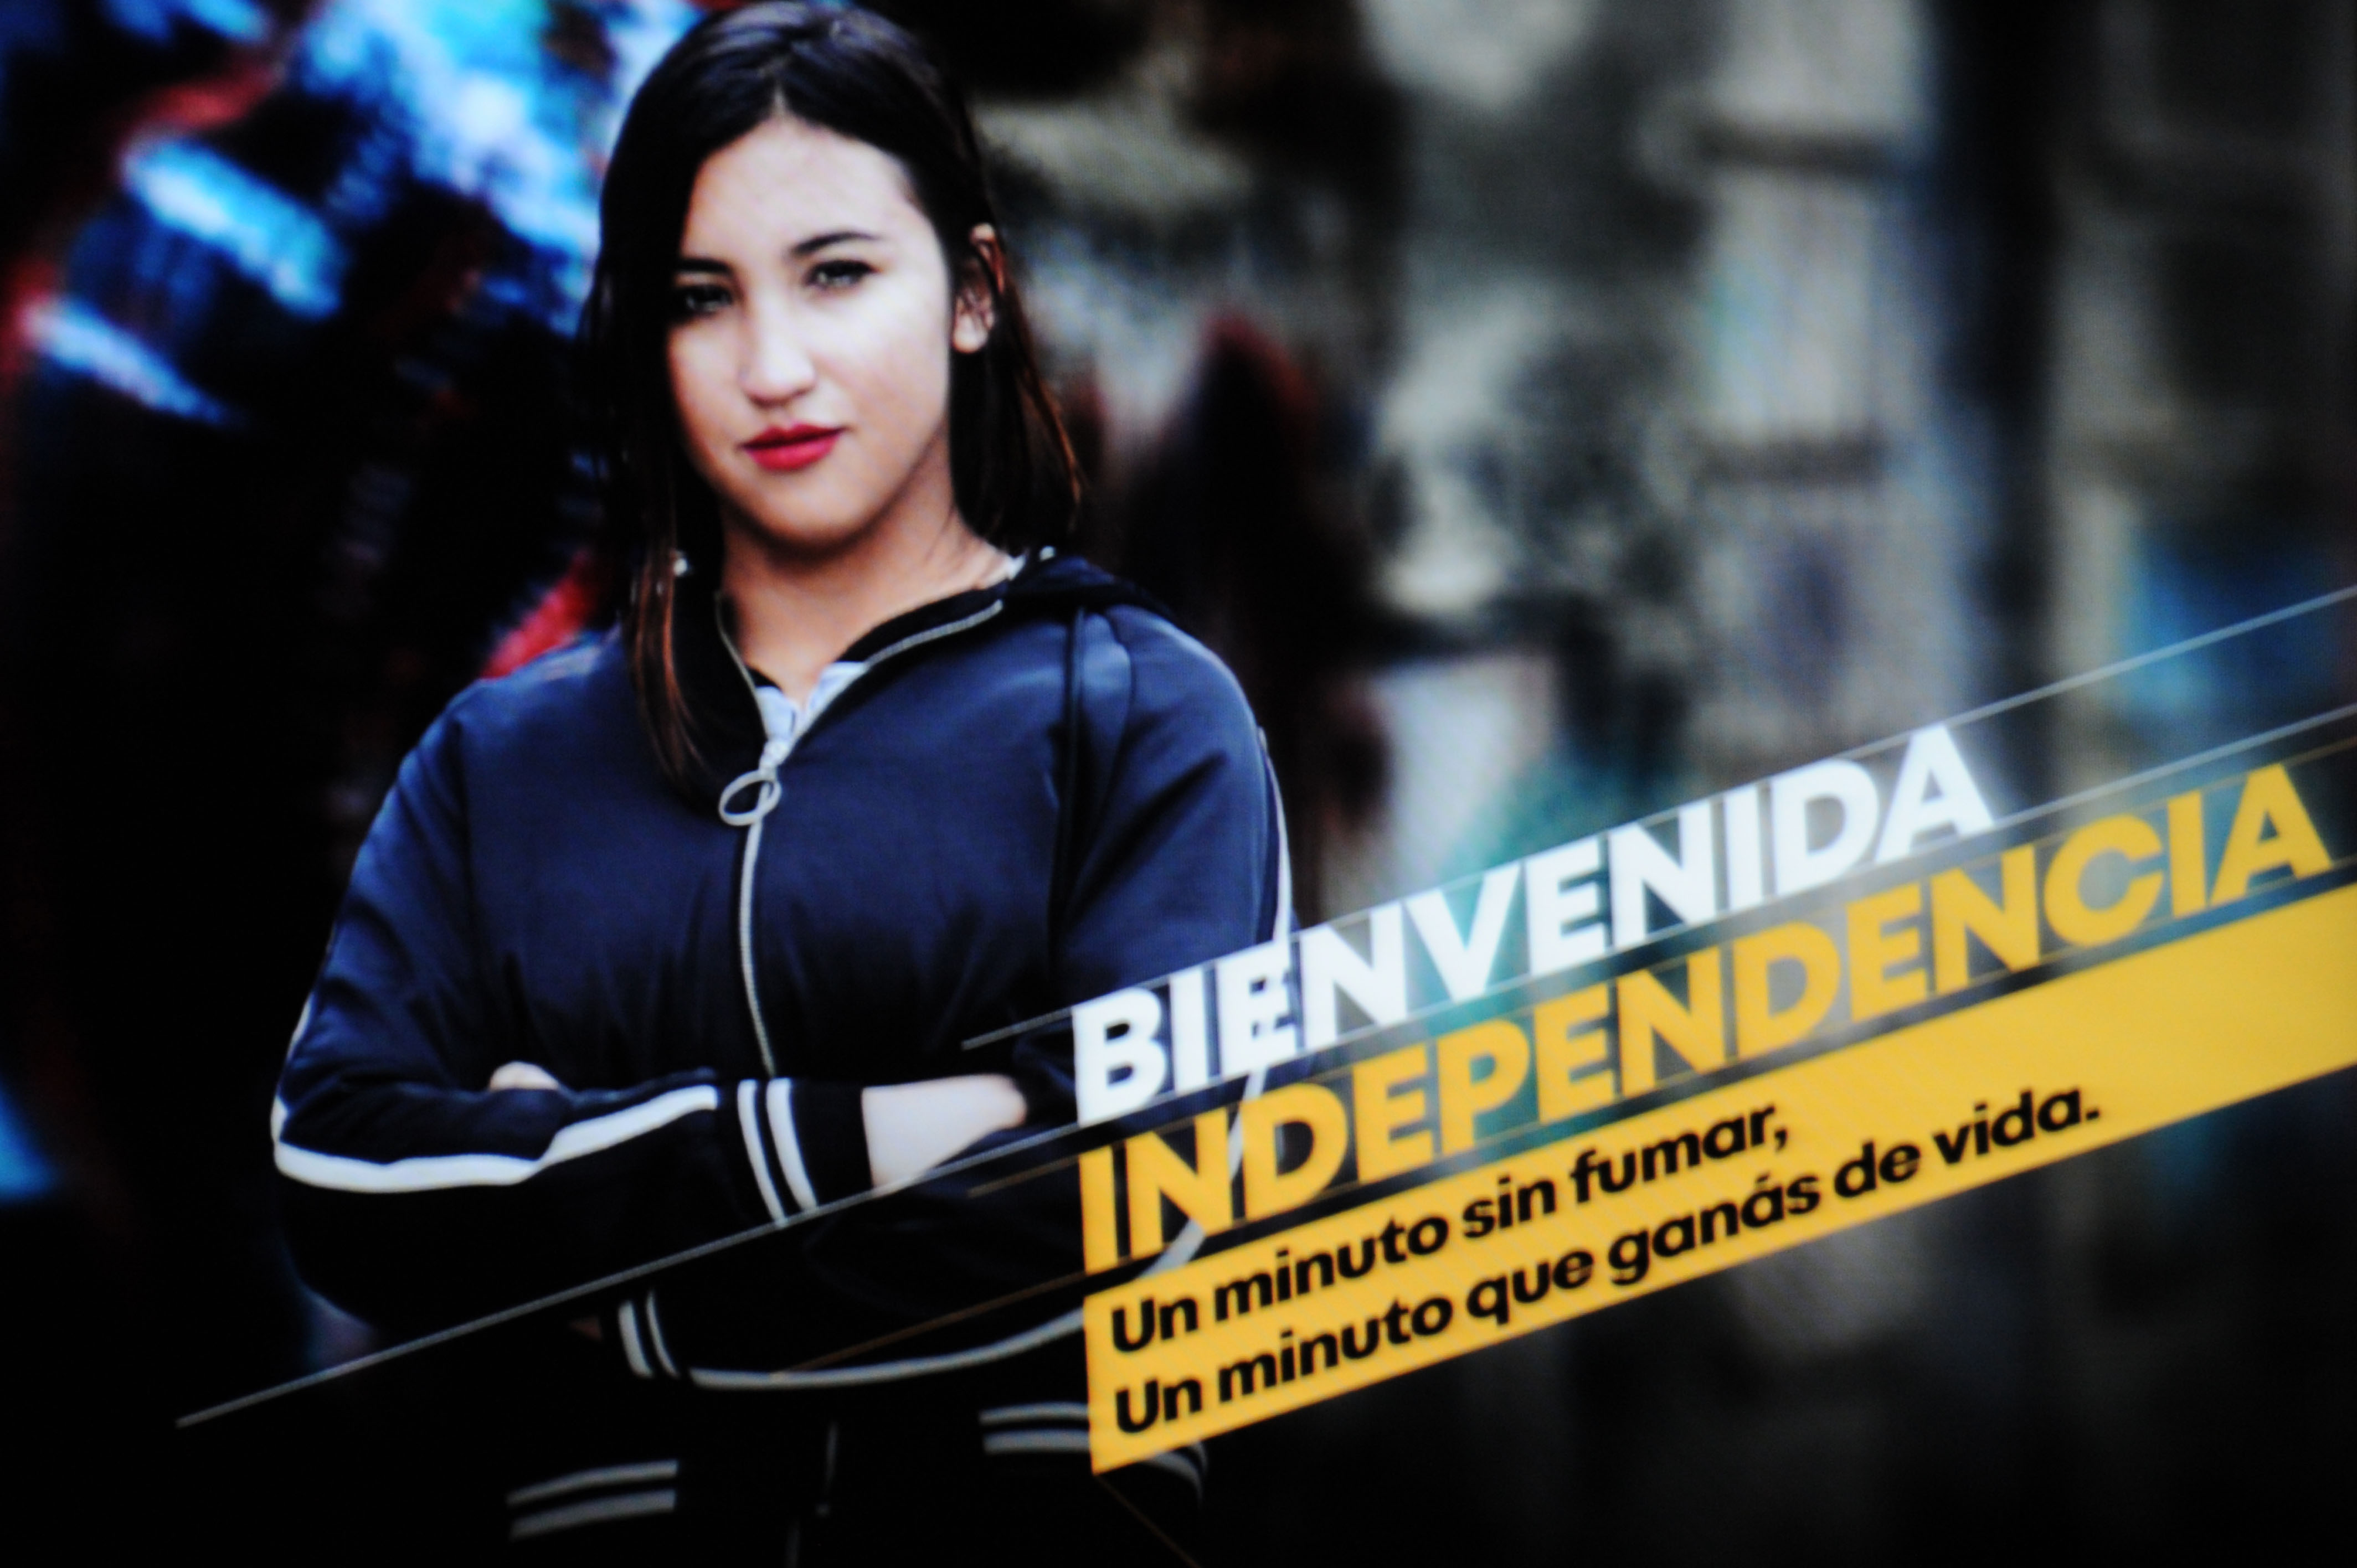 Campaña publicitaria dirigida a mujeres jóvenes de Uruguay